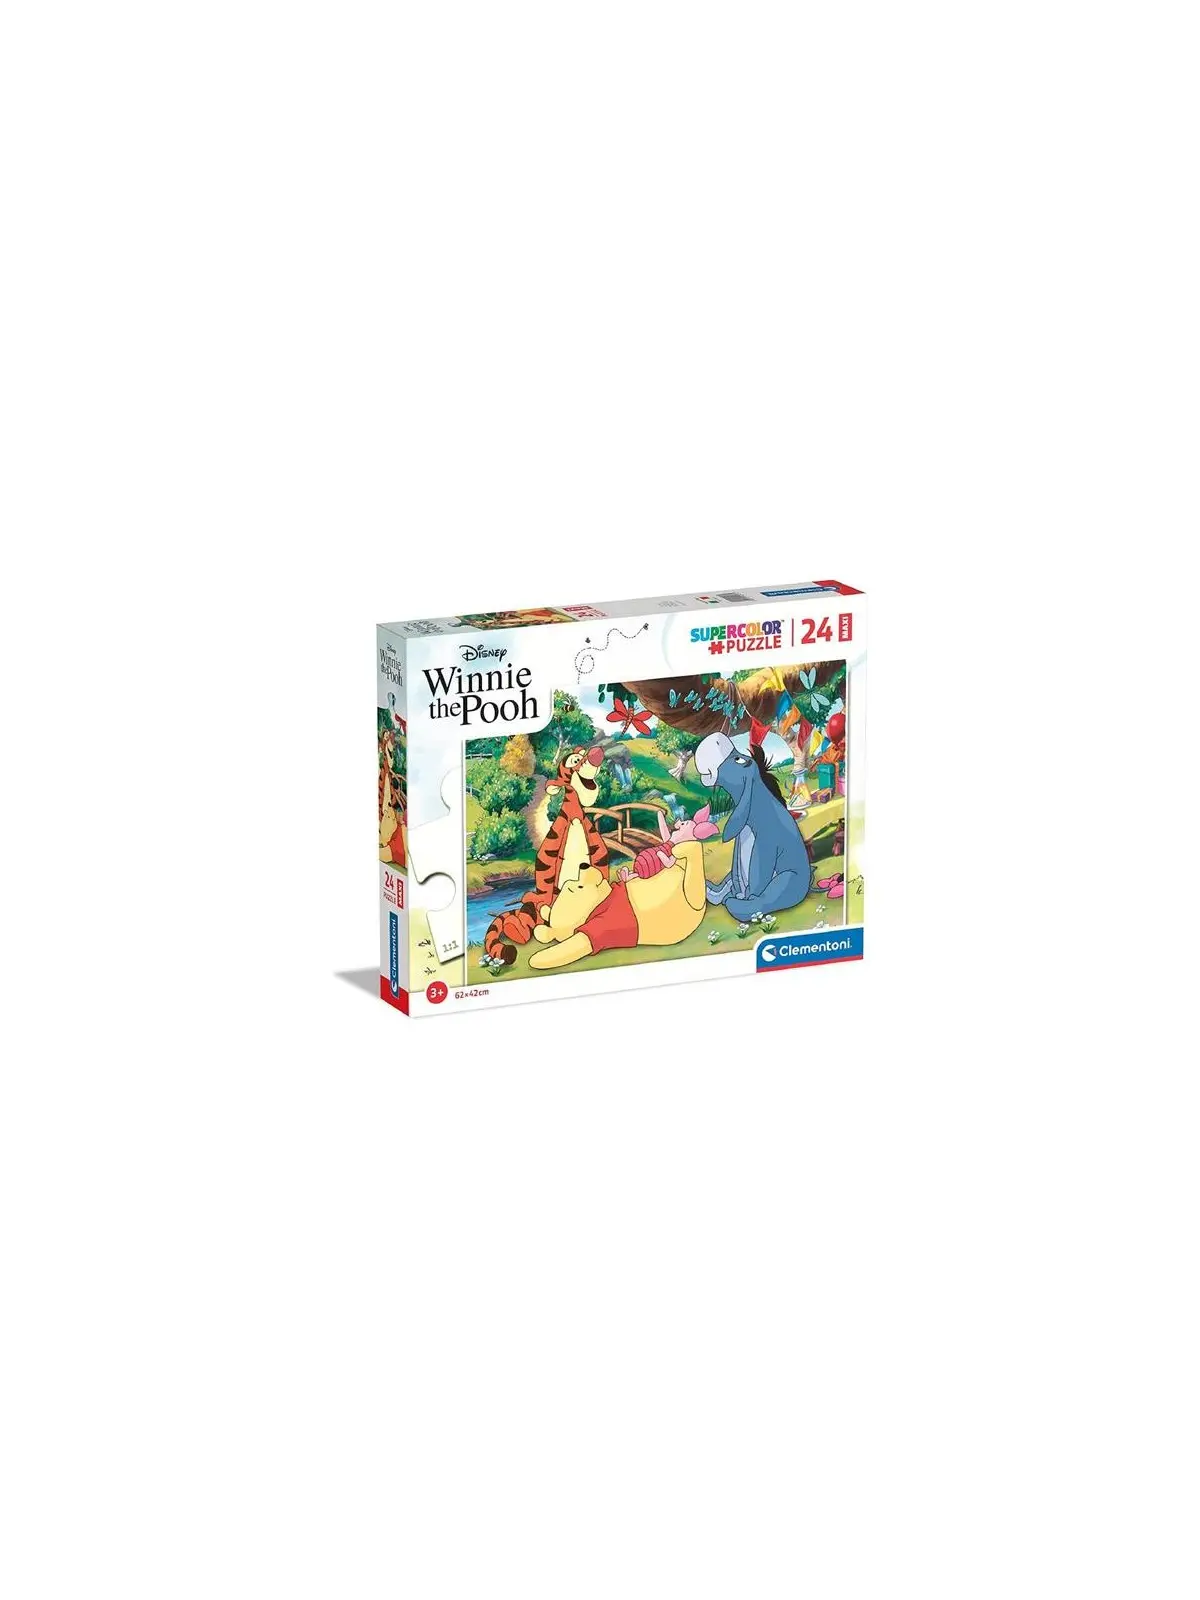 Maxi Puzzle Super Color Disney Winnie the Pooh 24 pcs